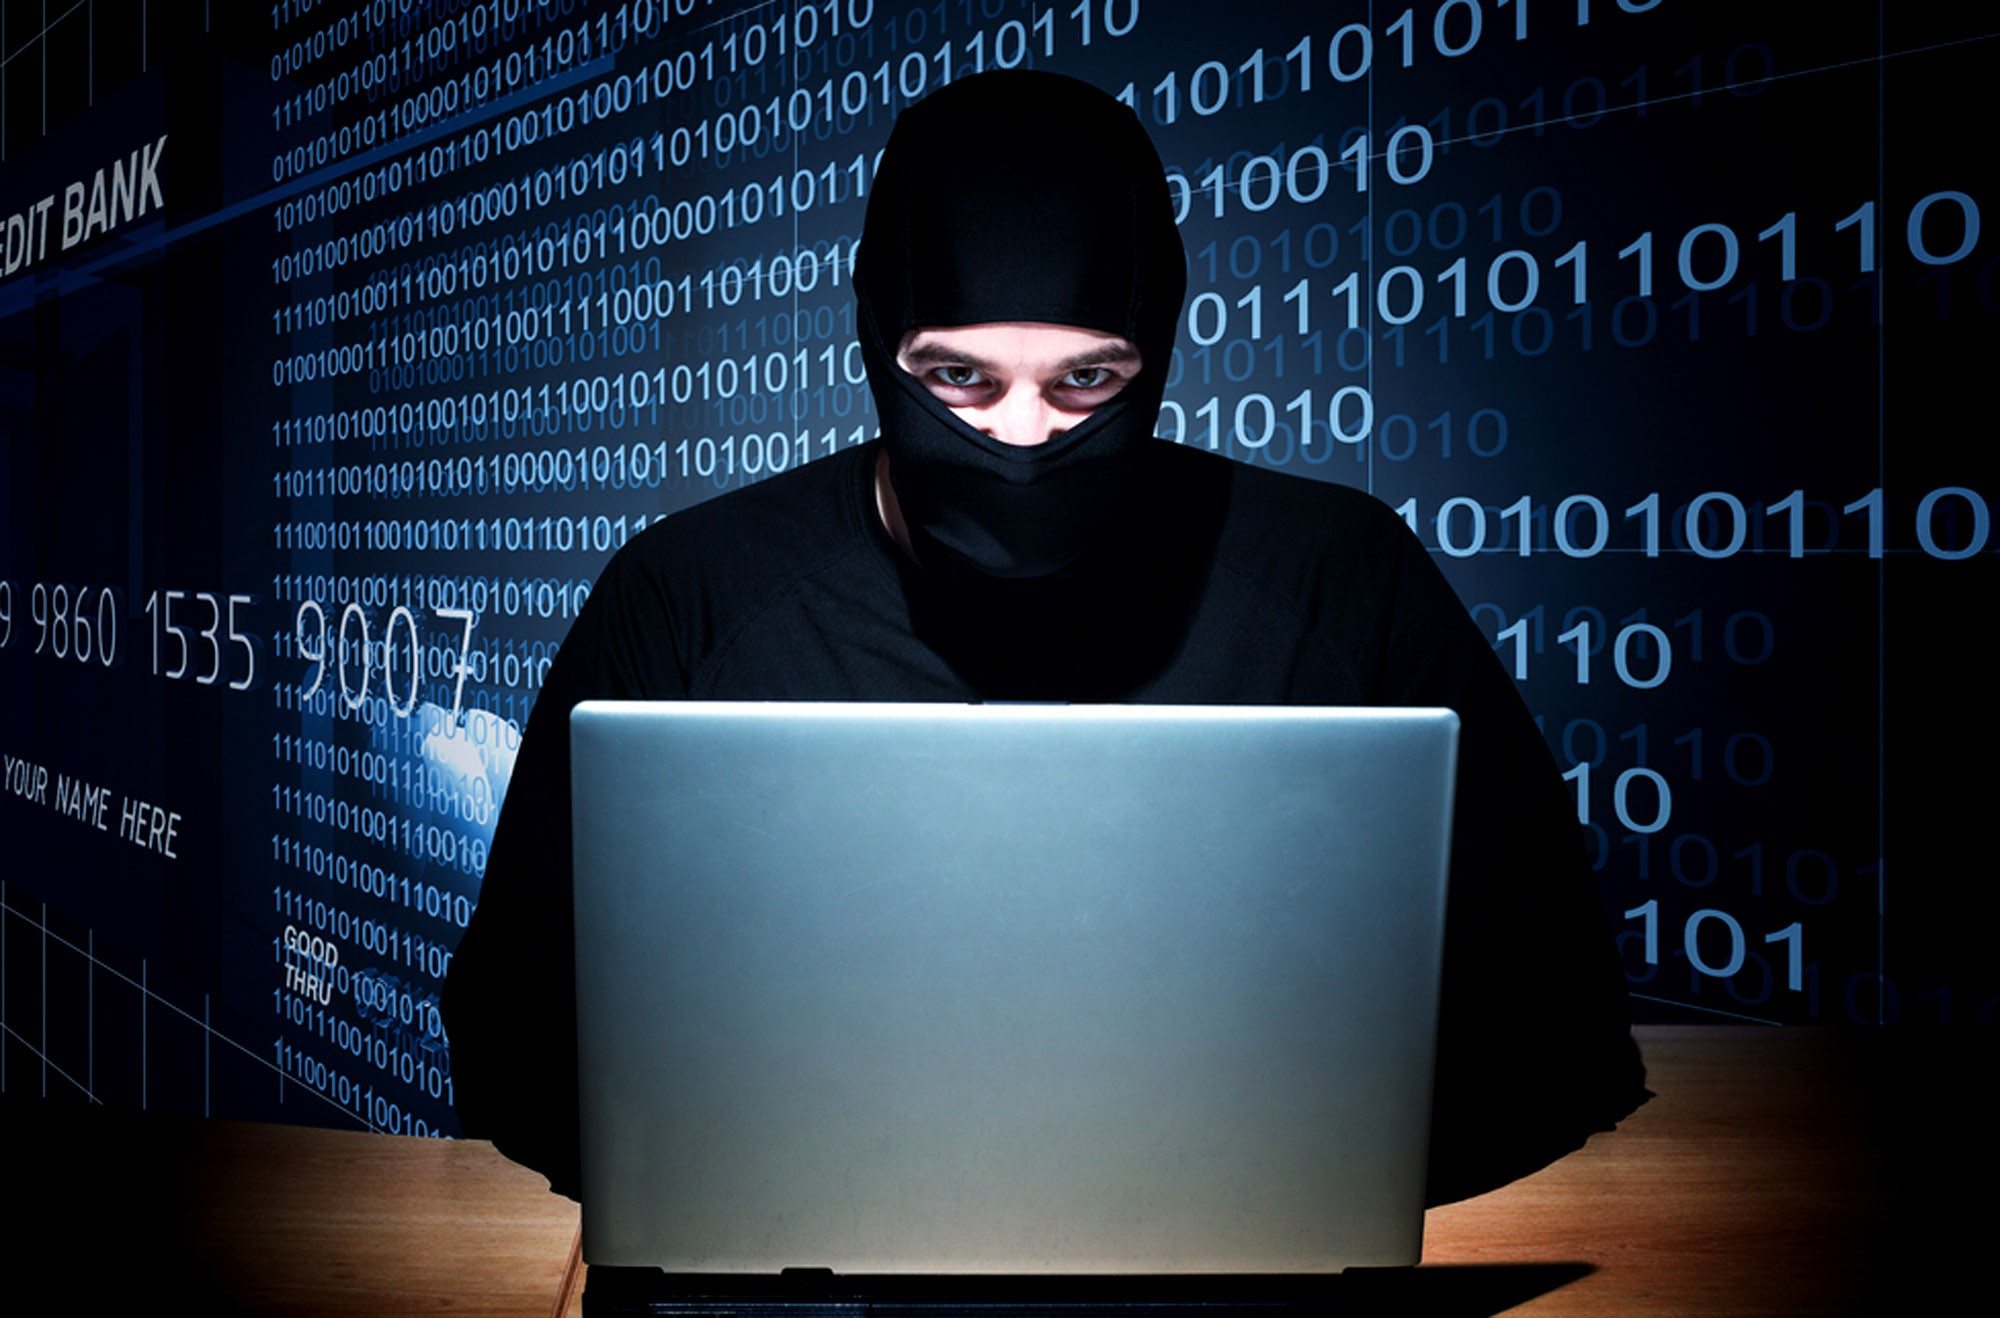 ЦРУ заплатило 100 тысяч долларов российскому хакеру за липовые документы